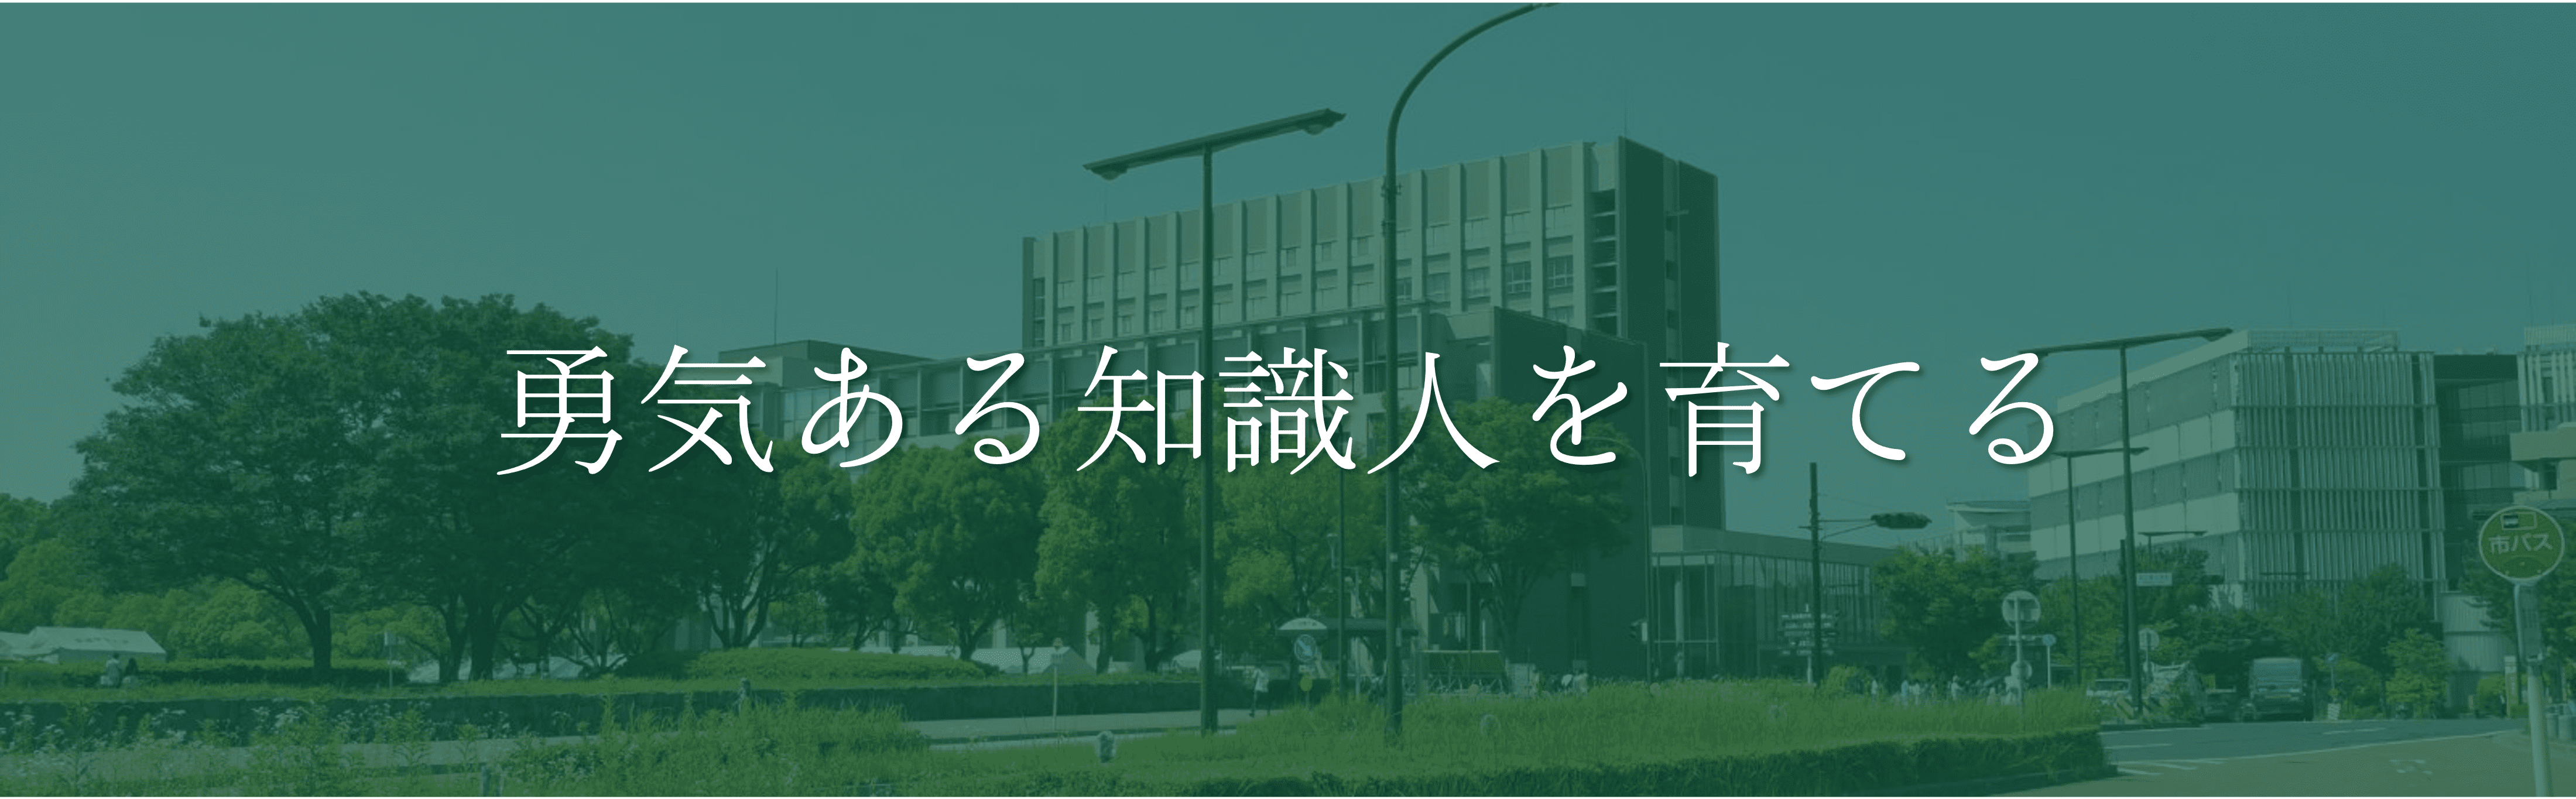 名古屋大学 モットー